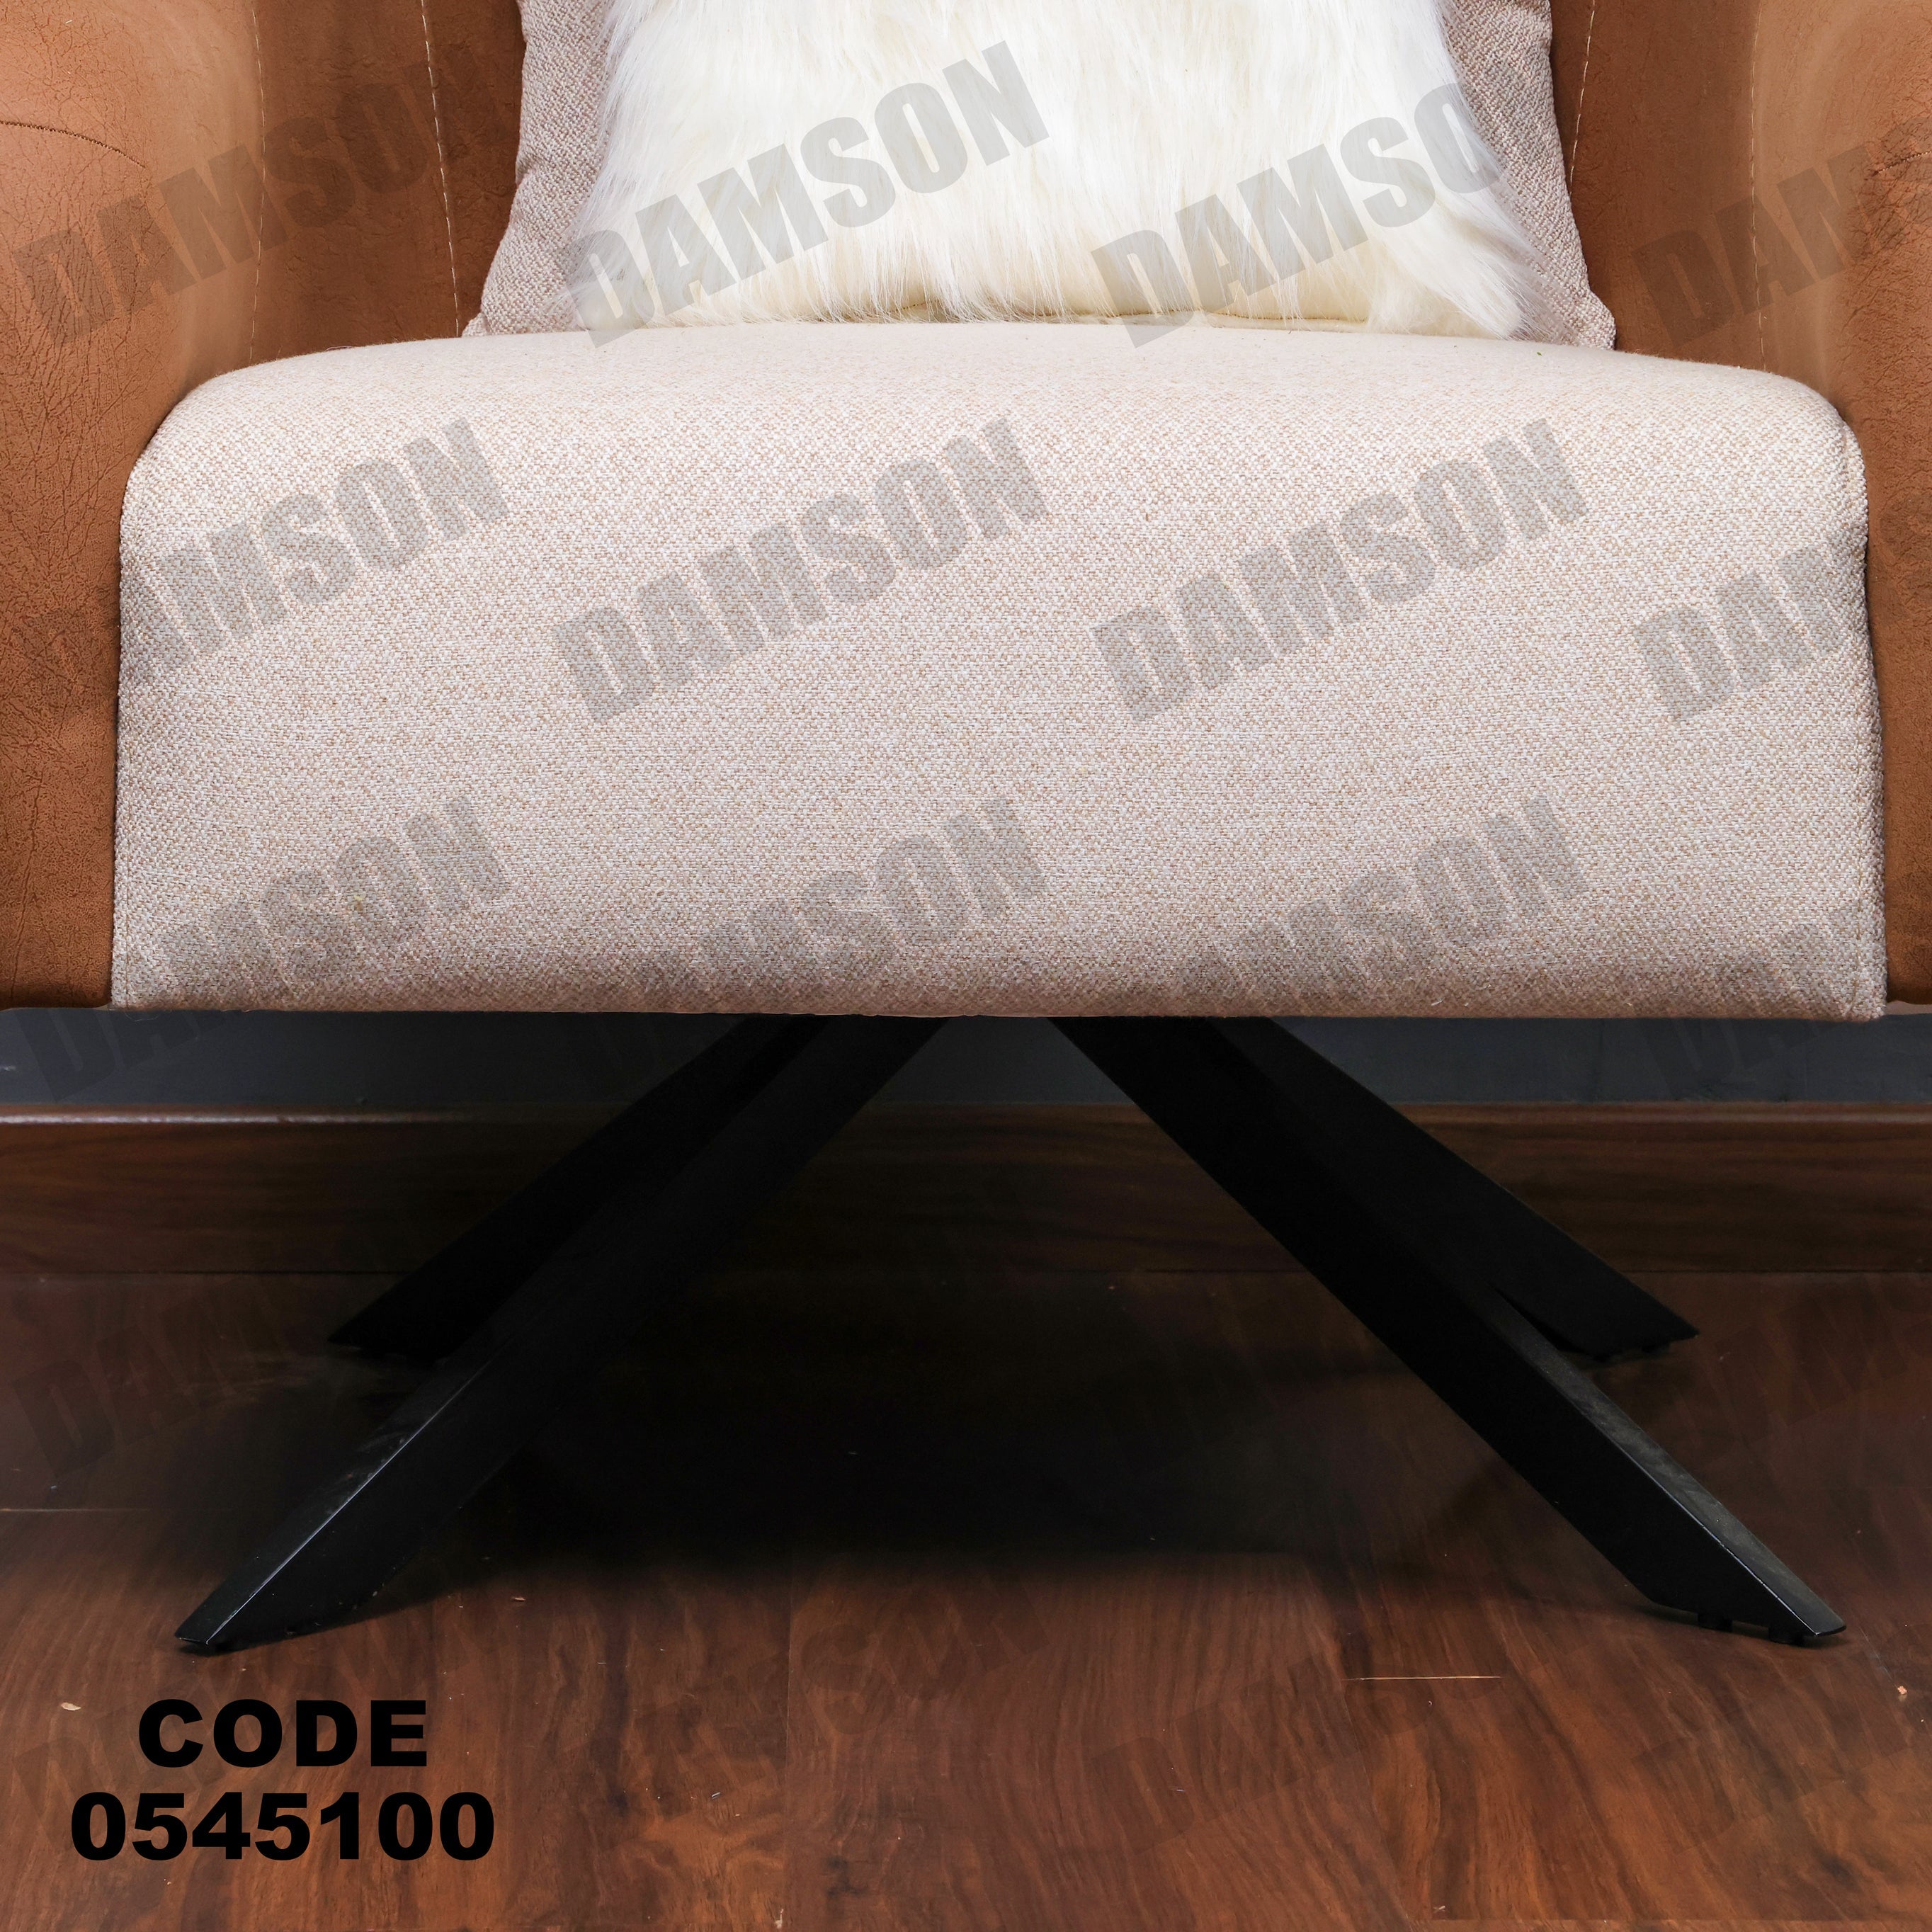 فوتية 1-451 - Damson Furnitureفوتية 1-451